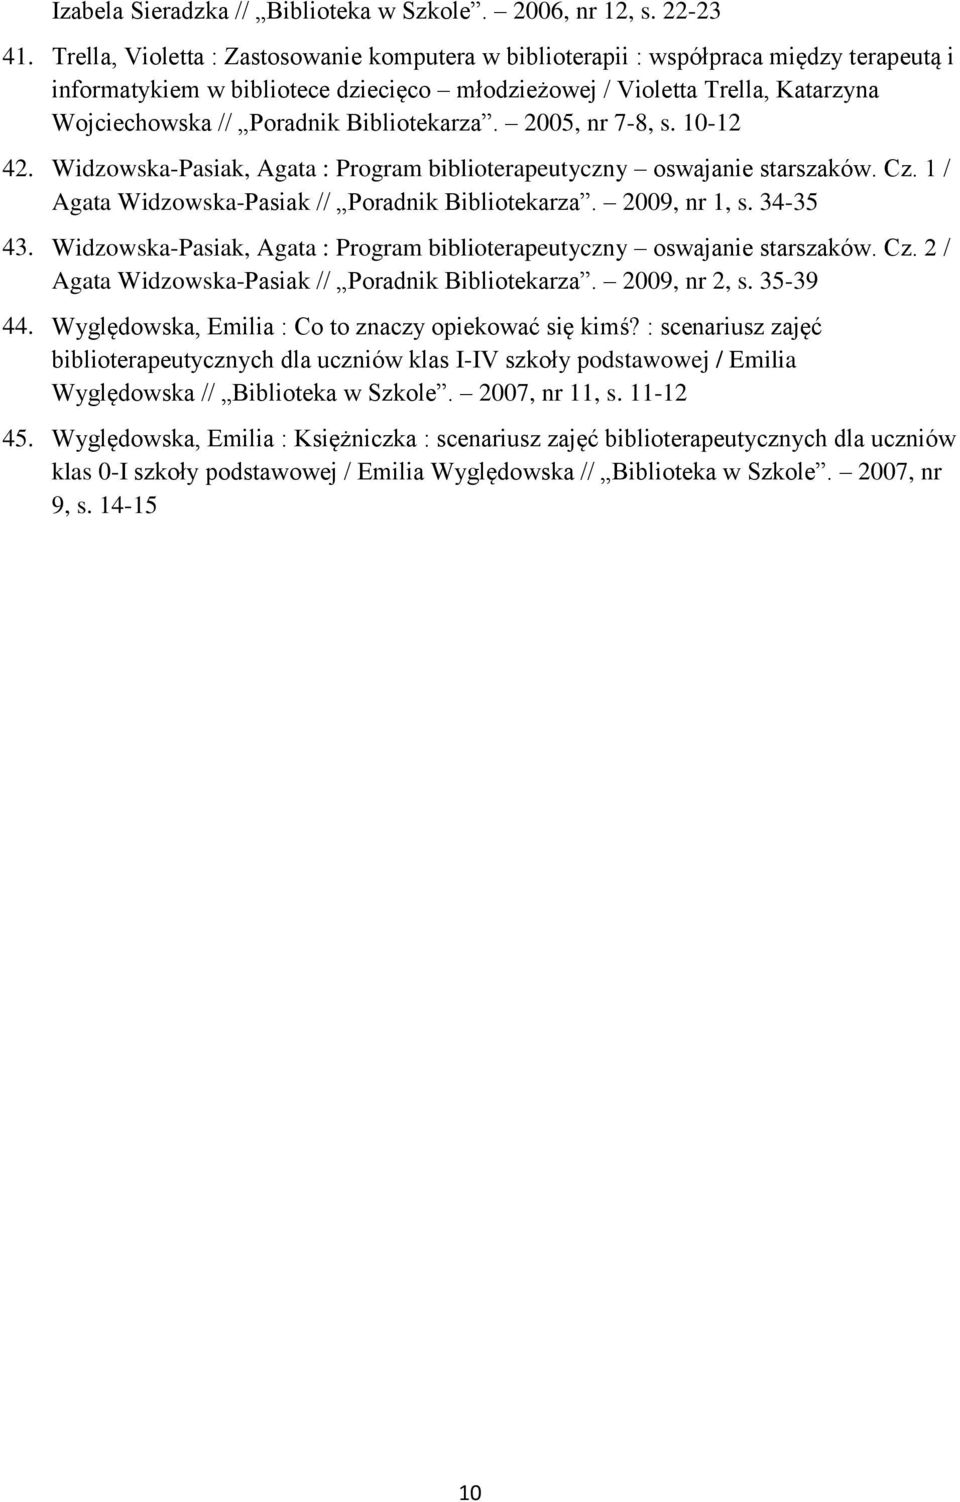 Bibliotekarza. 2005, nr 7-8, s. 10-12 42. Widzowska-Pasiak, Agata : Program biblioterapeutyczny oswajanie starszaków. Cz. 1 / Agata Widzowska-Pasiak // Poradnik Bibliotekarza. 2009, nr 1, s. 34-35 43.